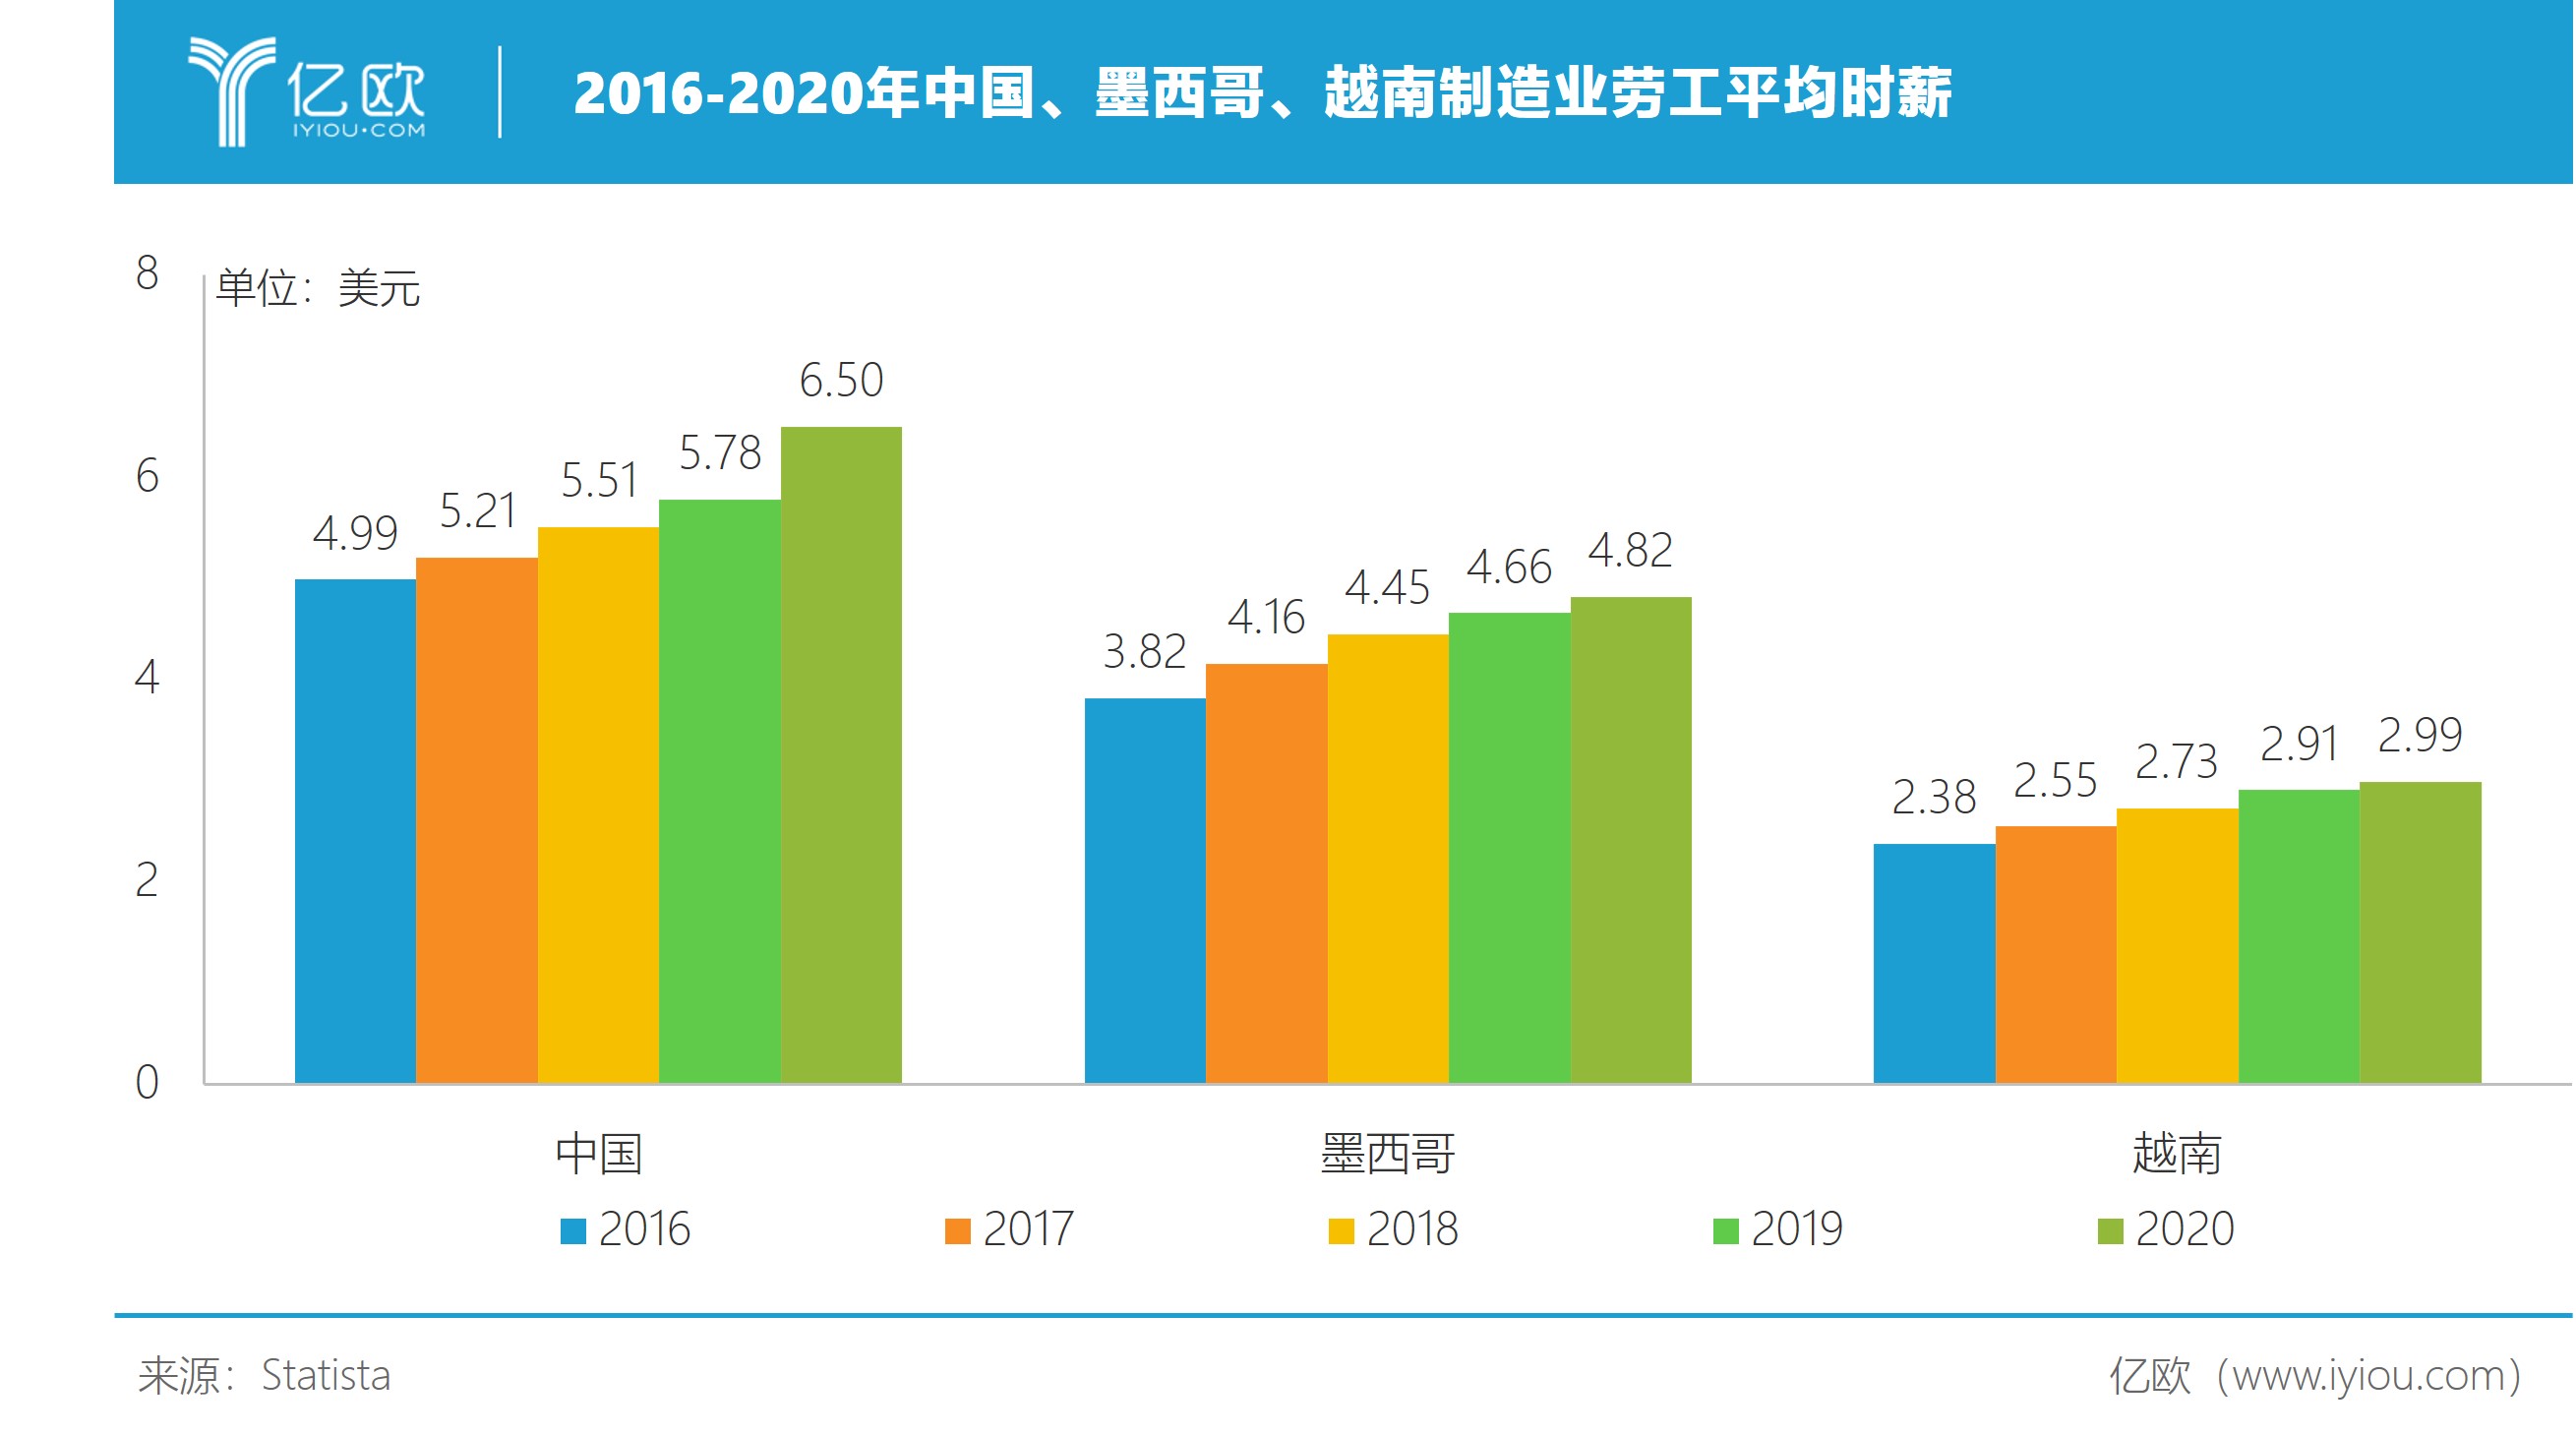 2016-2020年中国、墨西哥、越南制造业劳动平均时薪